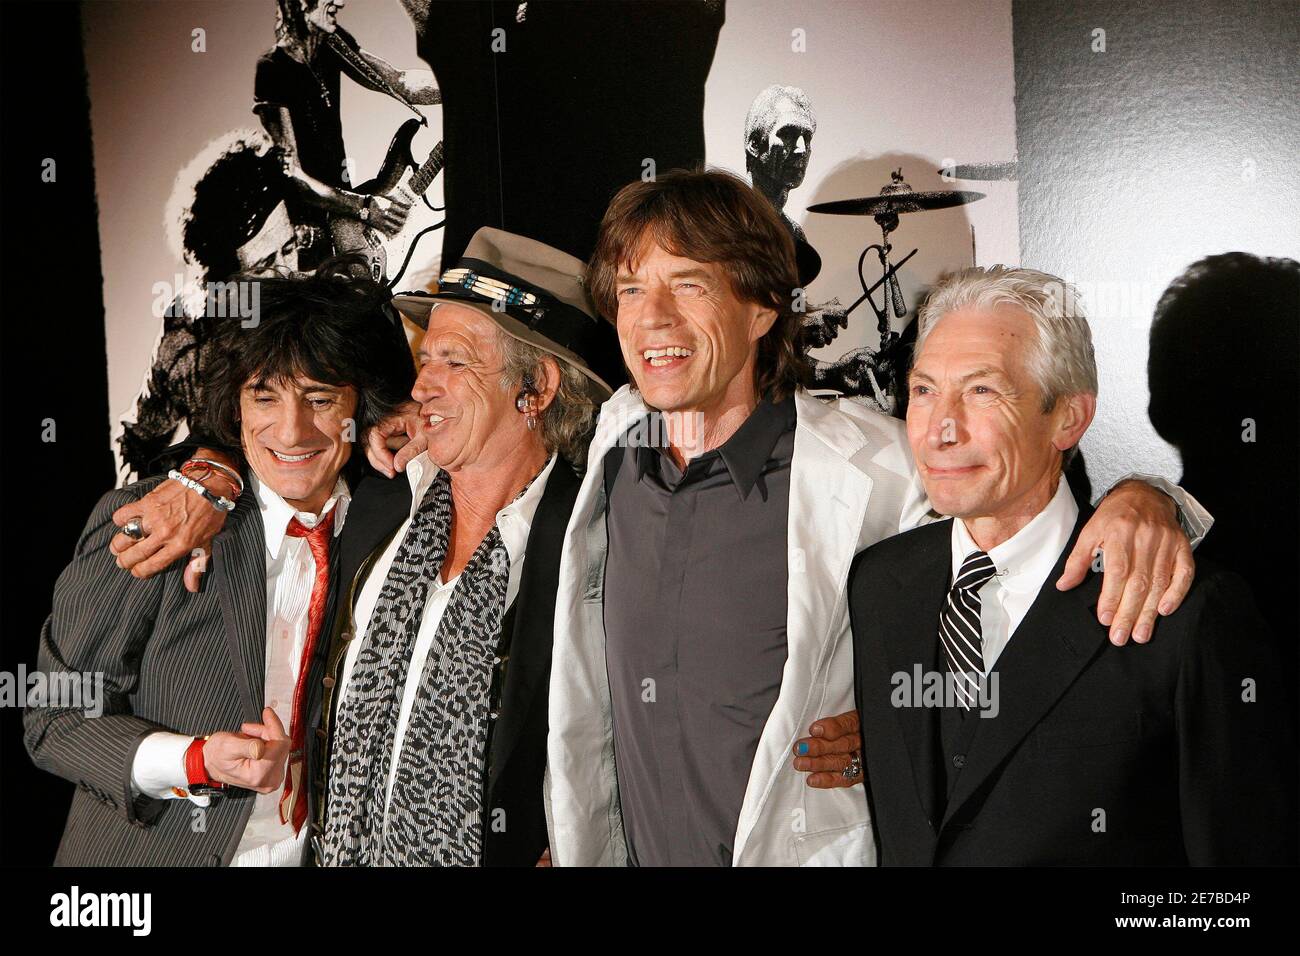 Rolling Stones Bandmitglieder Keith Richards (2 L), Mick Jagger (2. R),  Ronnie Wood (L) und Charlie Watts die Gruppe bei der Premiere des  Dokumentarfilms "Shine A Light", unter der Regie von Martin